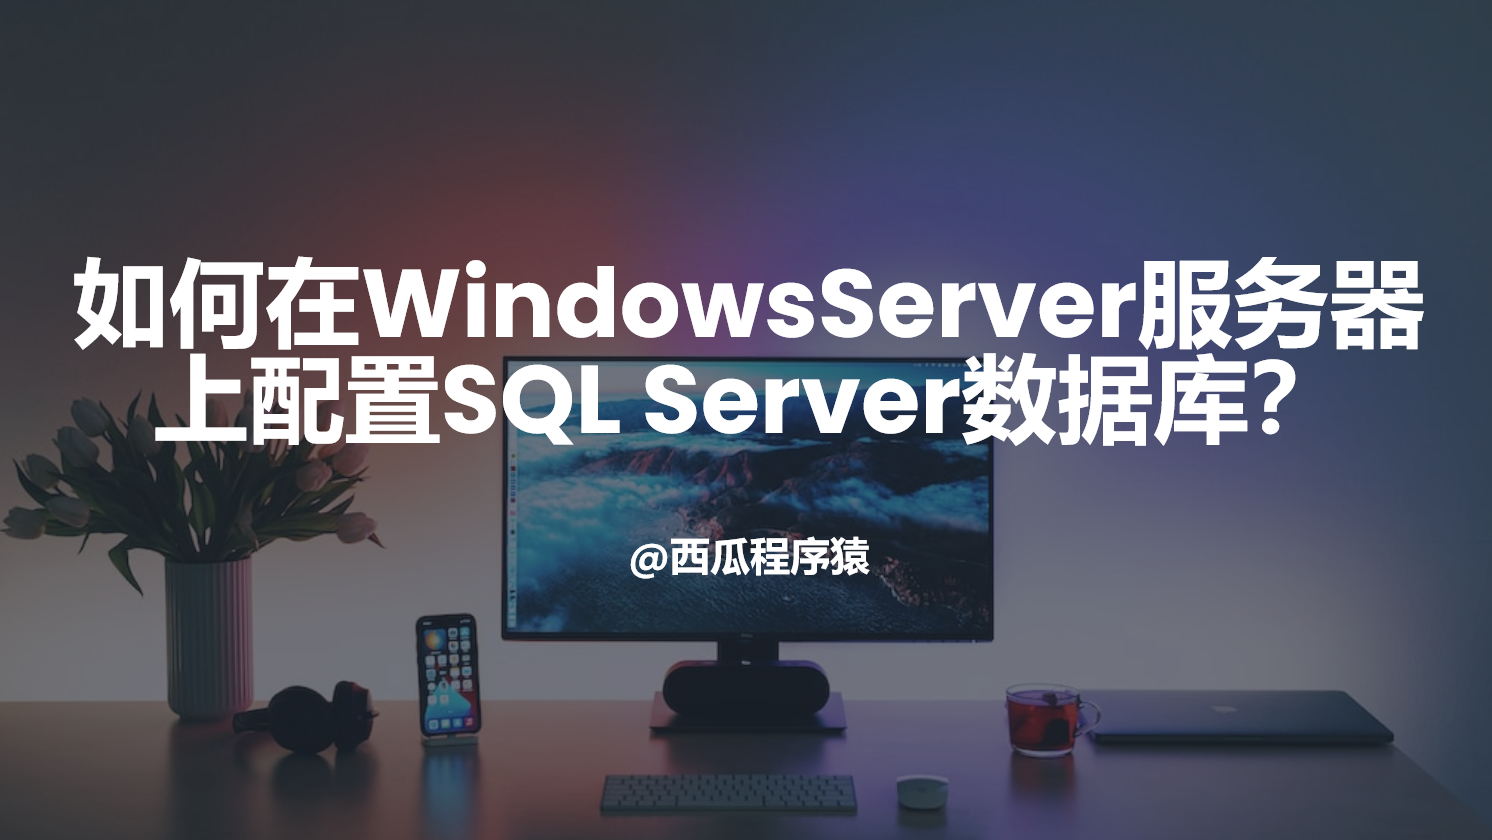 如何在WindowsServer服务器上配置SQL Server数据库？